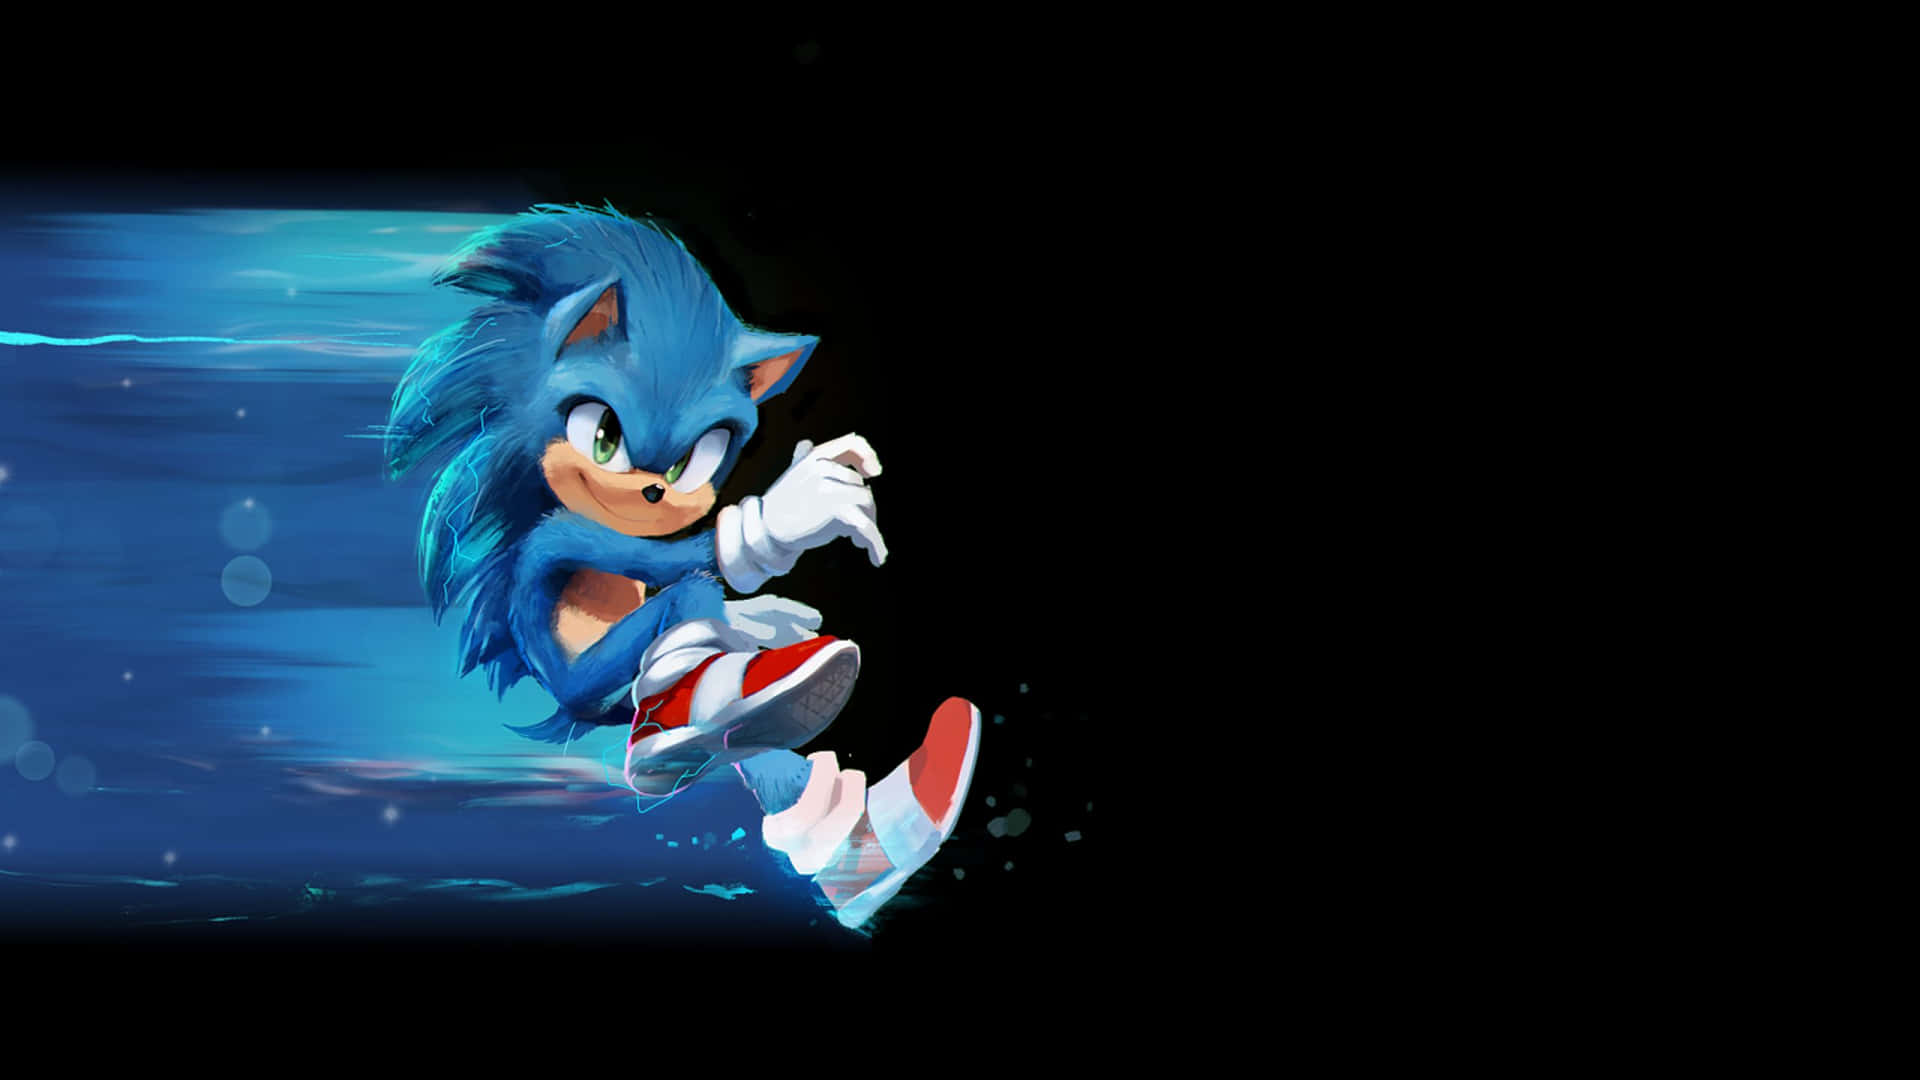 Velocidadhacia La Victoria Mientras Corres Junto A Sonic The Hedgehog. Fondo de pantalla